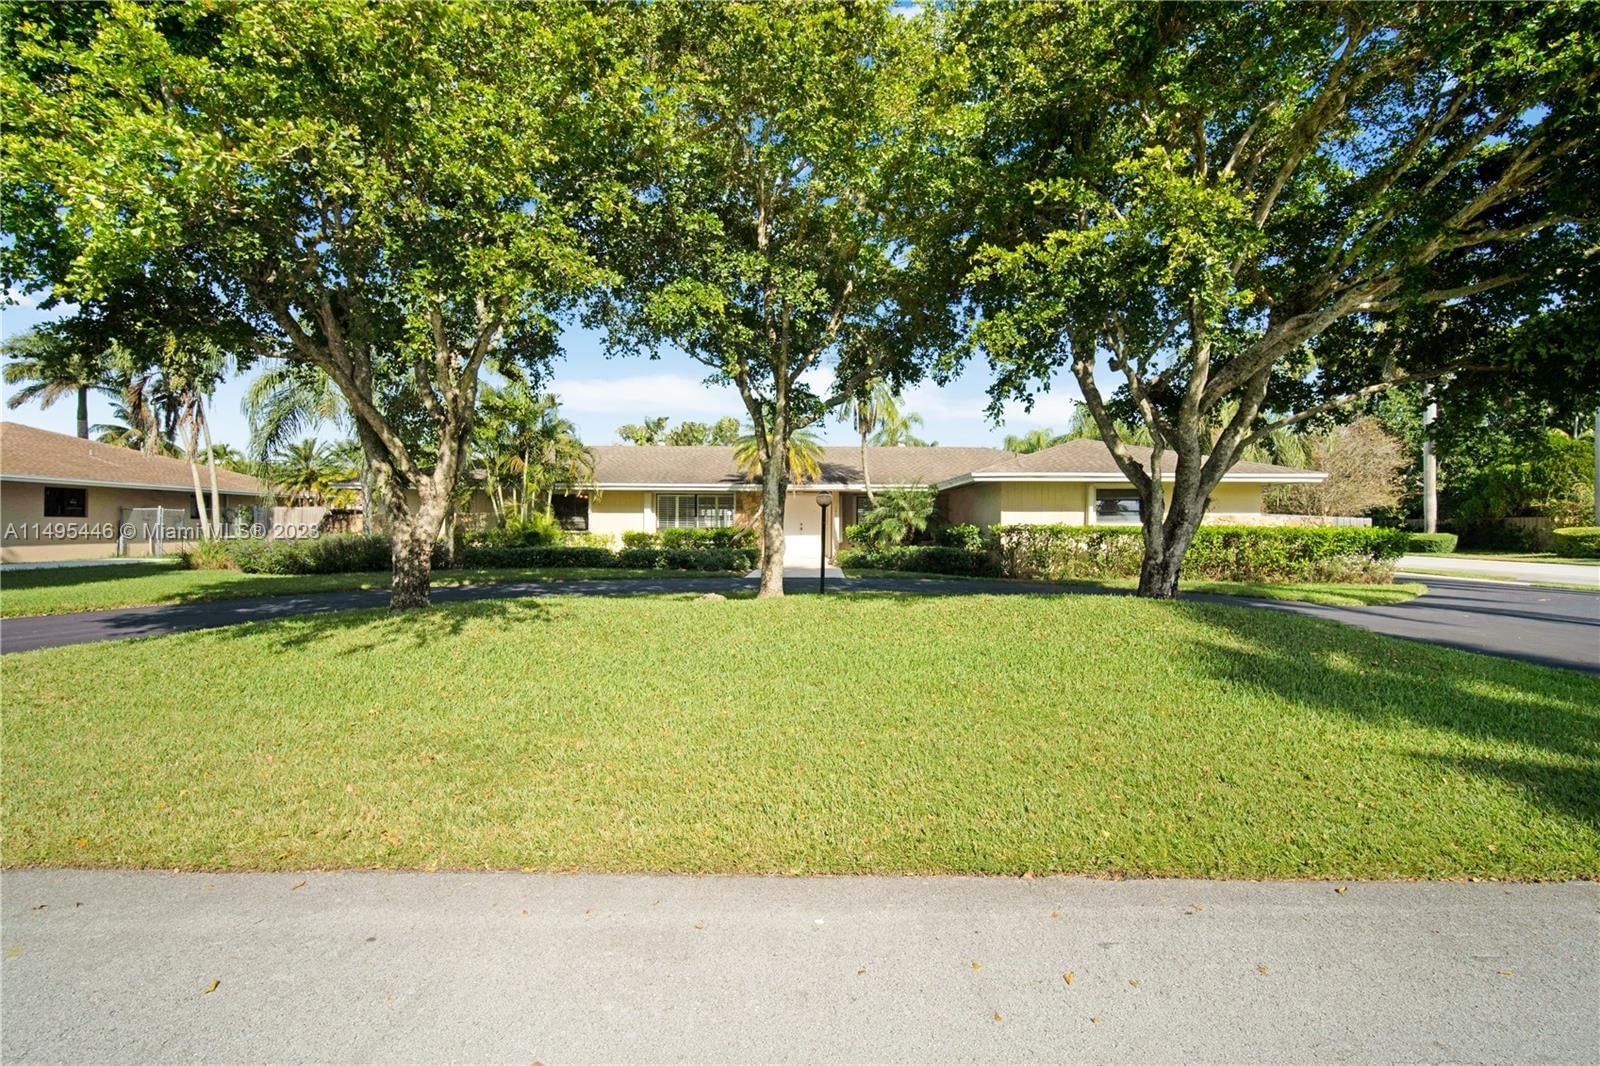 Real estate property located at 10201 141 St, Miami-Dade County, LUSIA R SUB, Miami, FL